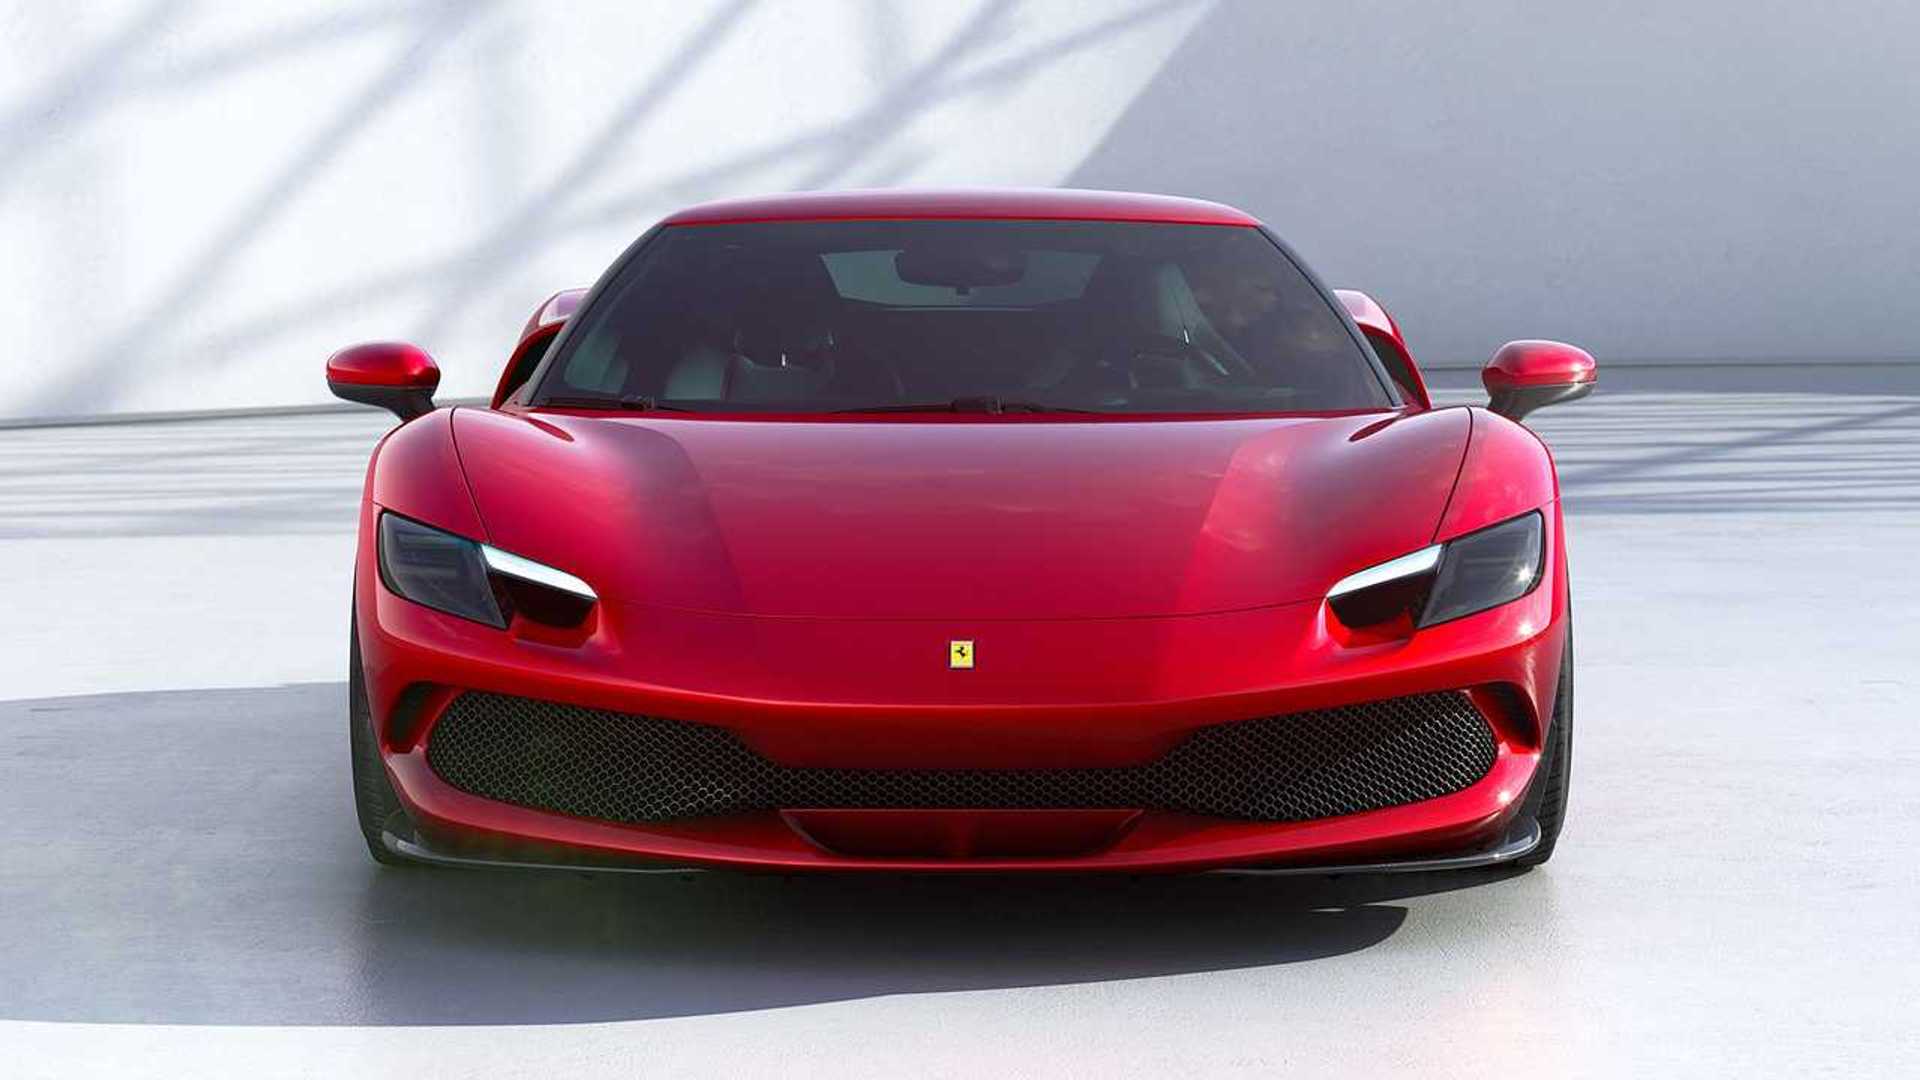 Σε ποια χώρα και γιατί εκτοξεύθηκαν οι πωλήσεις της Ferrari